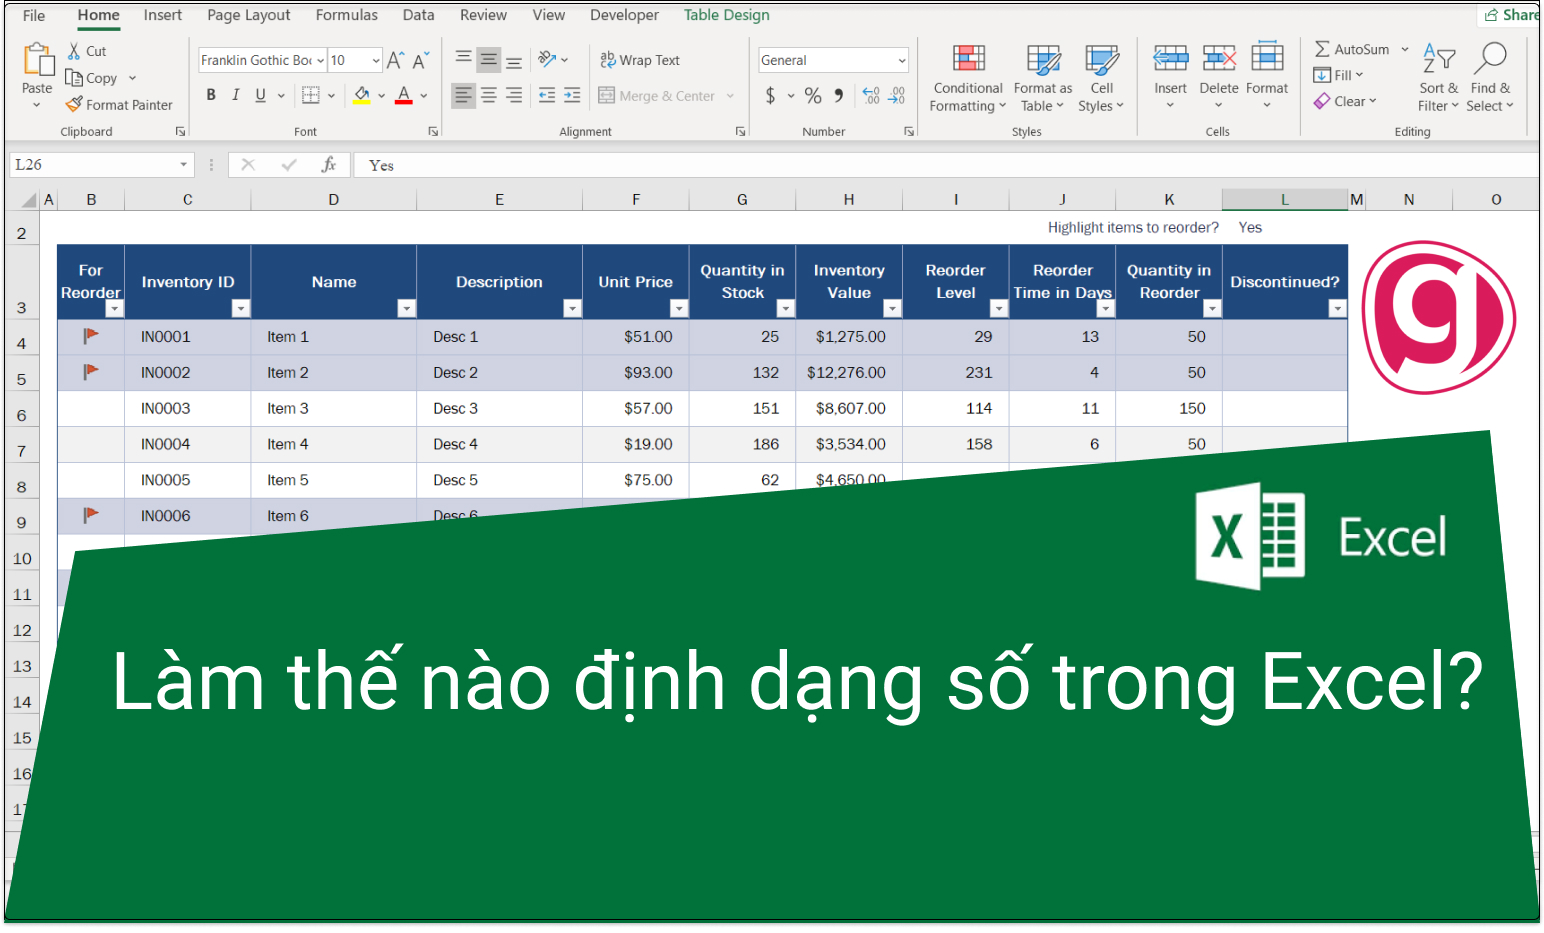 Định dạng số trong Excel số 0 không chỉ giúp bạn thuận tiện hơn trong các tính toán và xử lý dữ liệu, mà còn giúp tăng tính chính xác và thẩm mỹ cho bảng tính của bạn. Cùng với những tính năng định dạng nâng cao, bạn sẽ có được những bảng tính đẹp và chuyên nghiệp hơn.